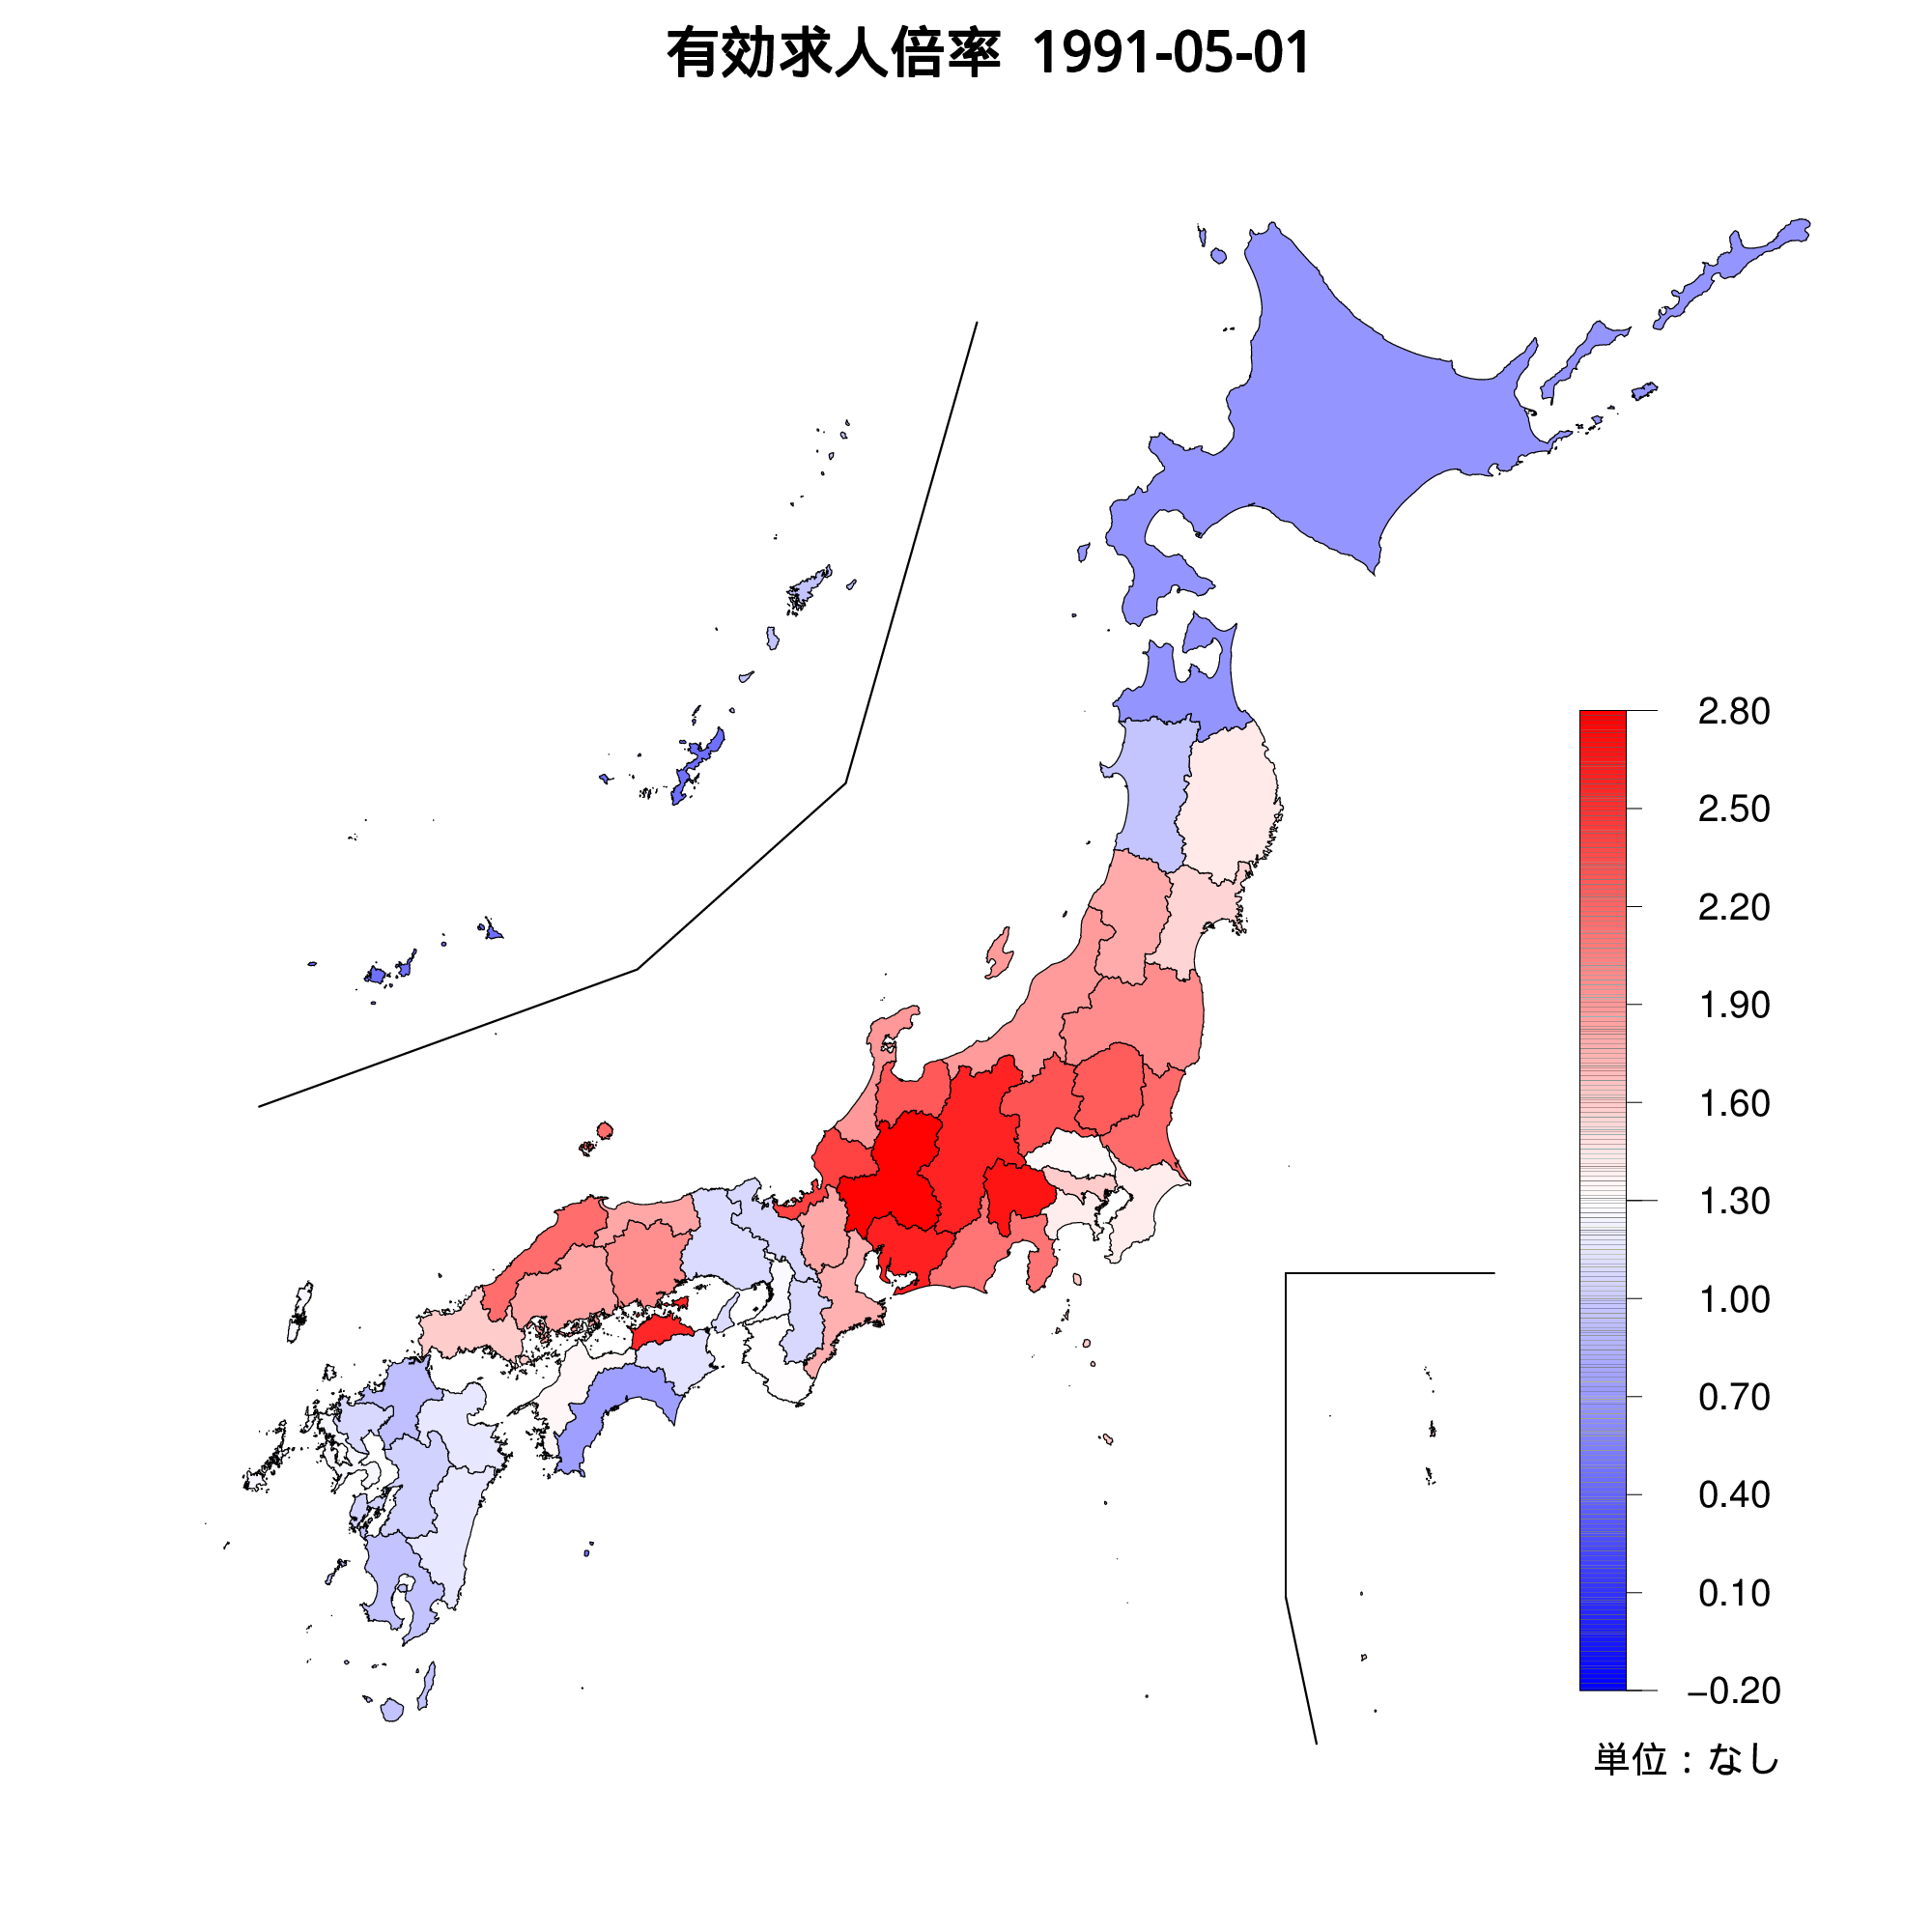 各都道府県の有効求人倍率を示す地図（1991年05月）